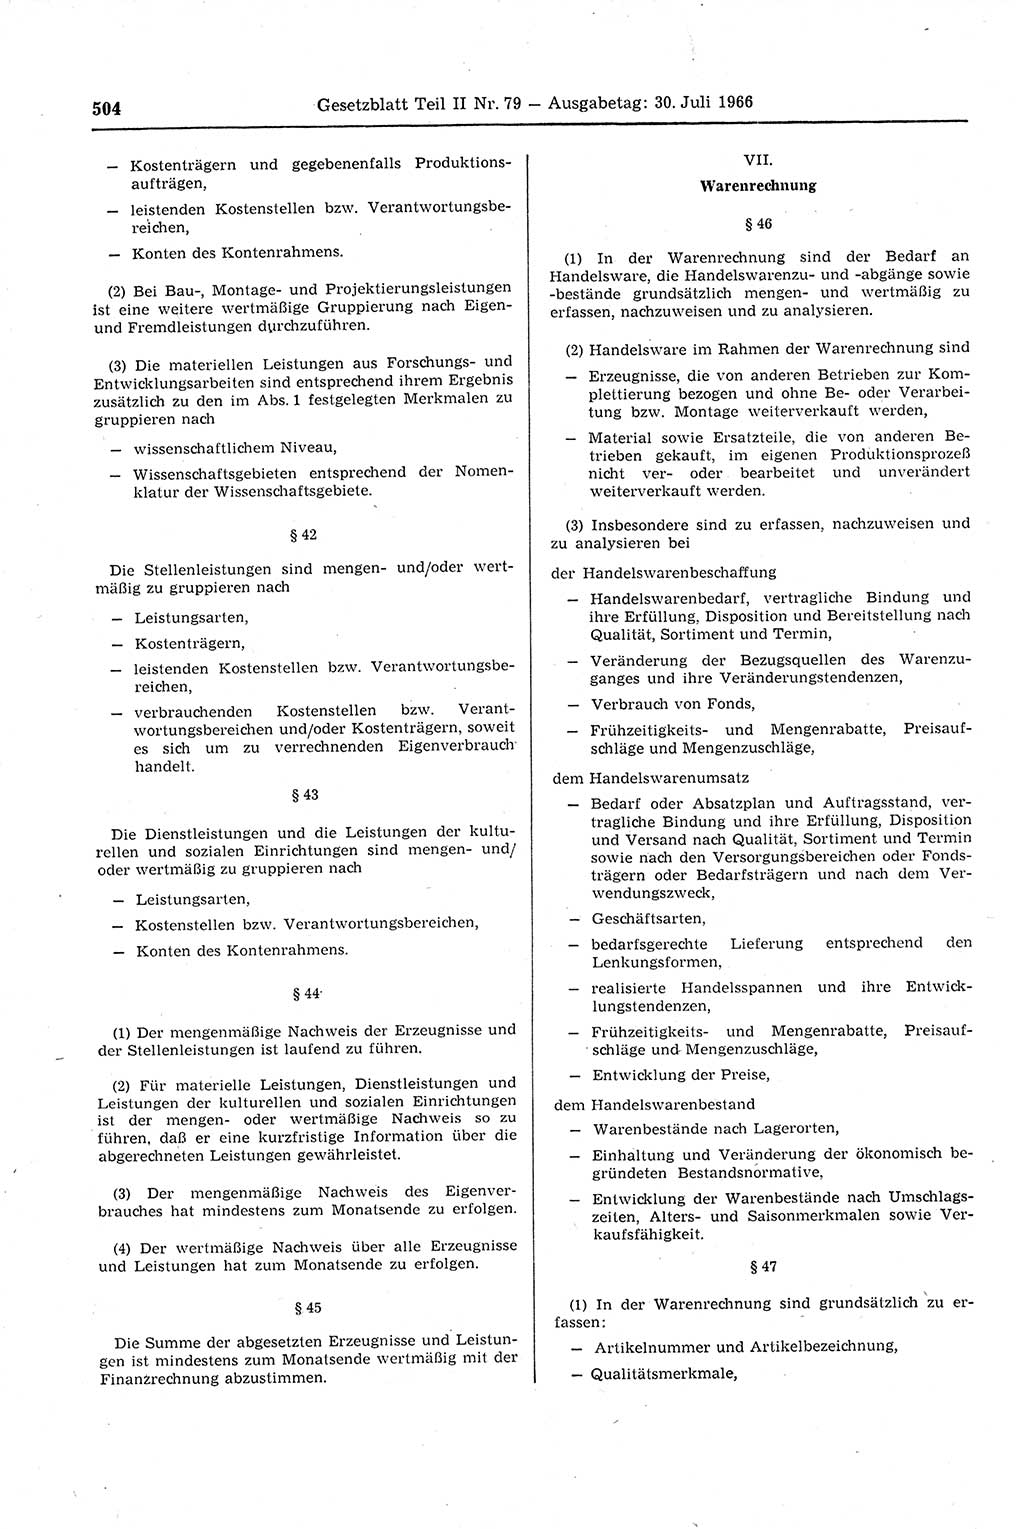 Gesetzblatt (GBl.) der Deutschen Demokratischen Republik (DDR) Teil ⅠⅠ 1966, Seite 504 (GBl. DDR ⅠⅠ 1966, S. 504)